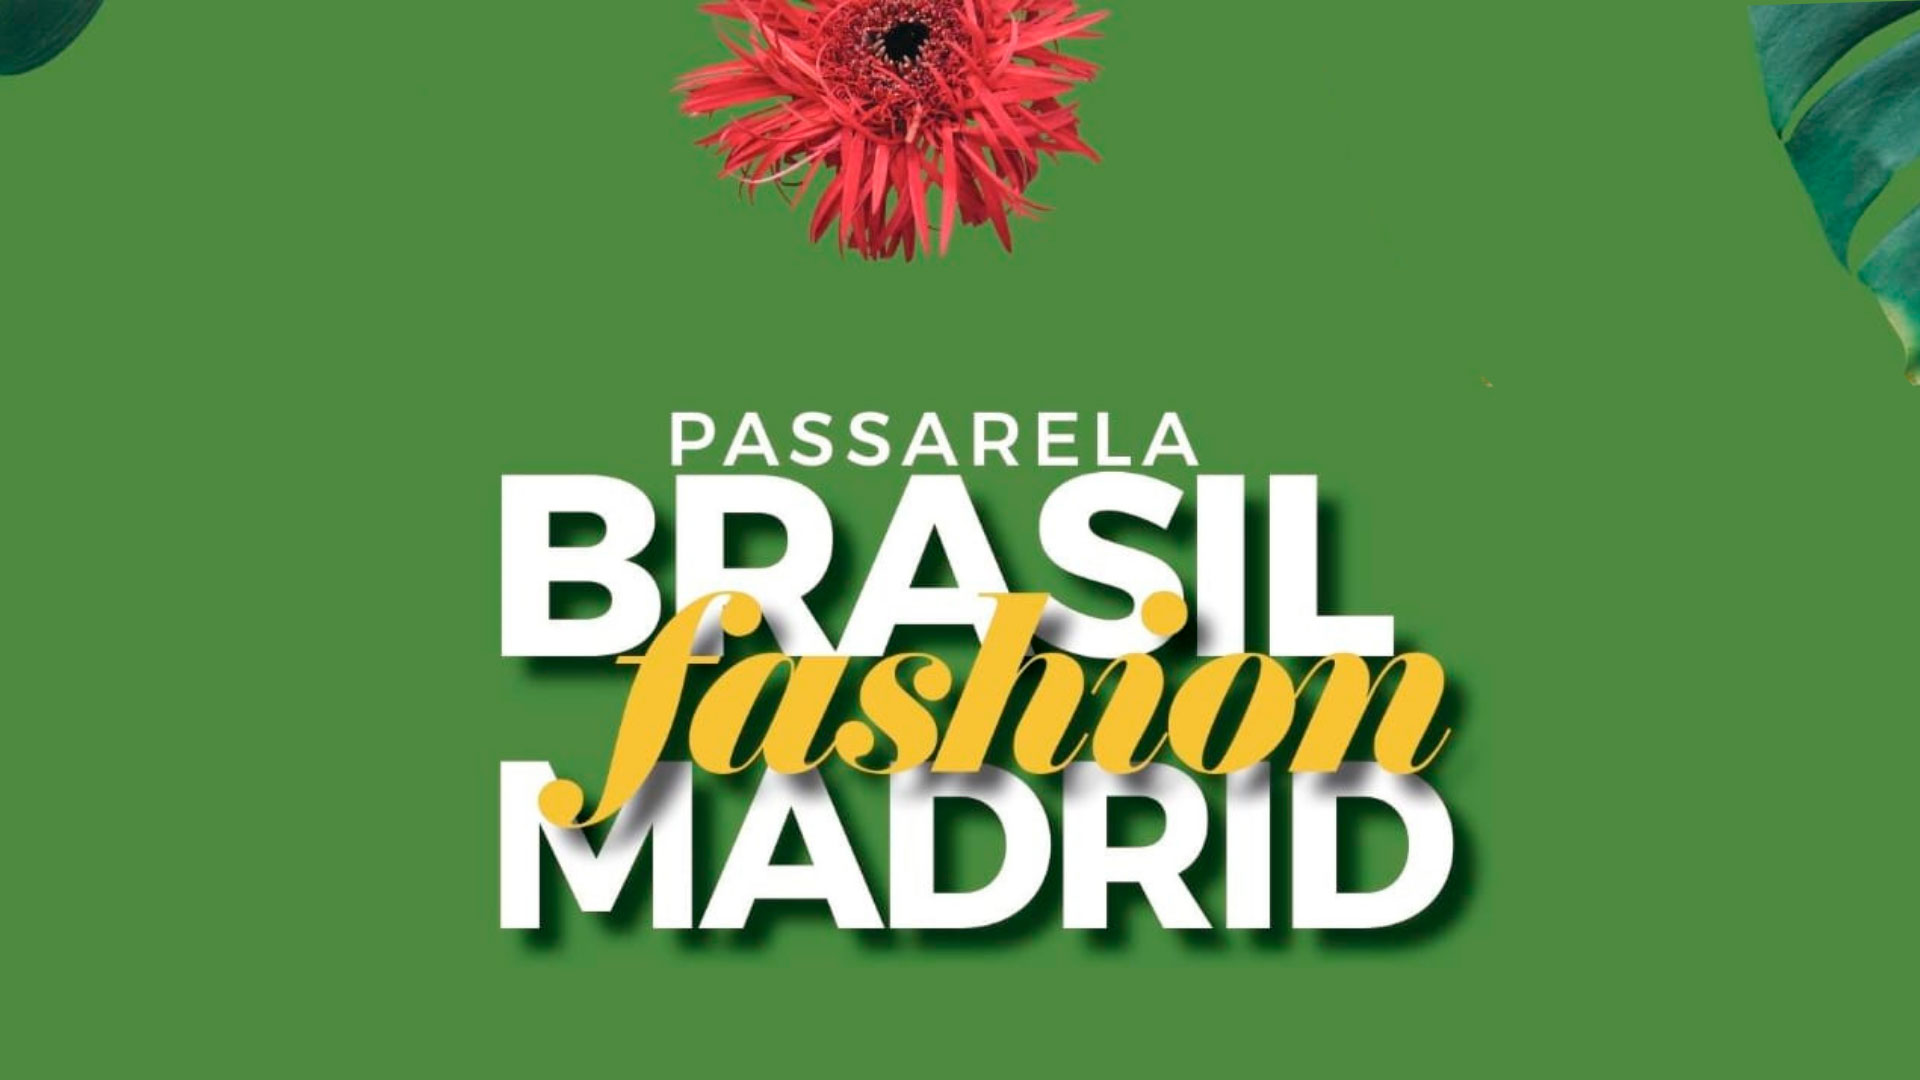 Pasarela Brasil Fashion Madrid